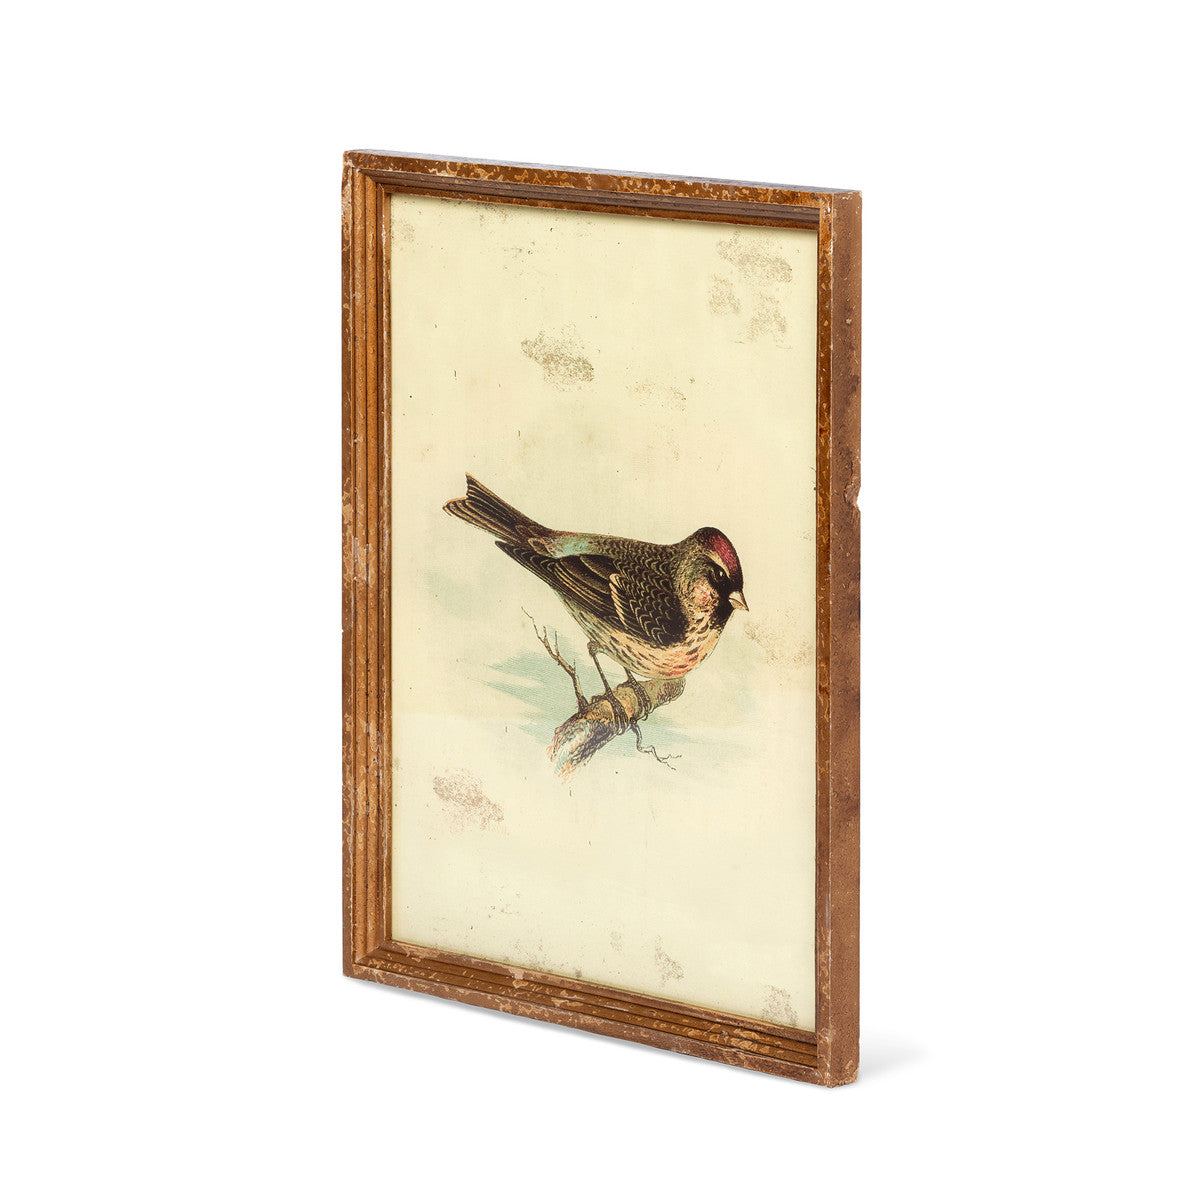 Vintage Bird Framed Prints - Set of 6